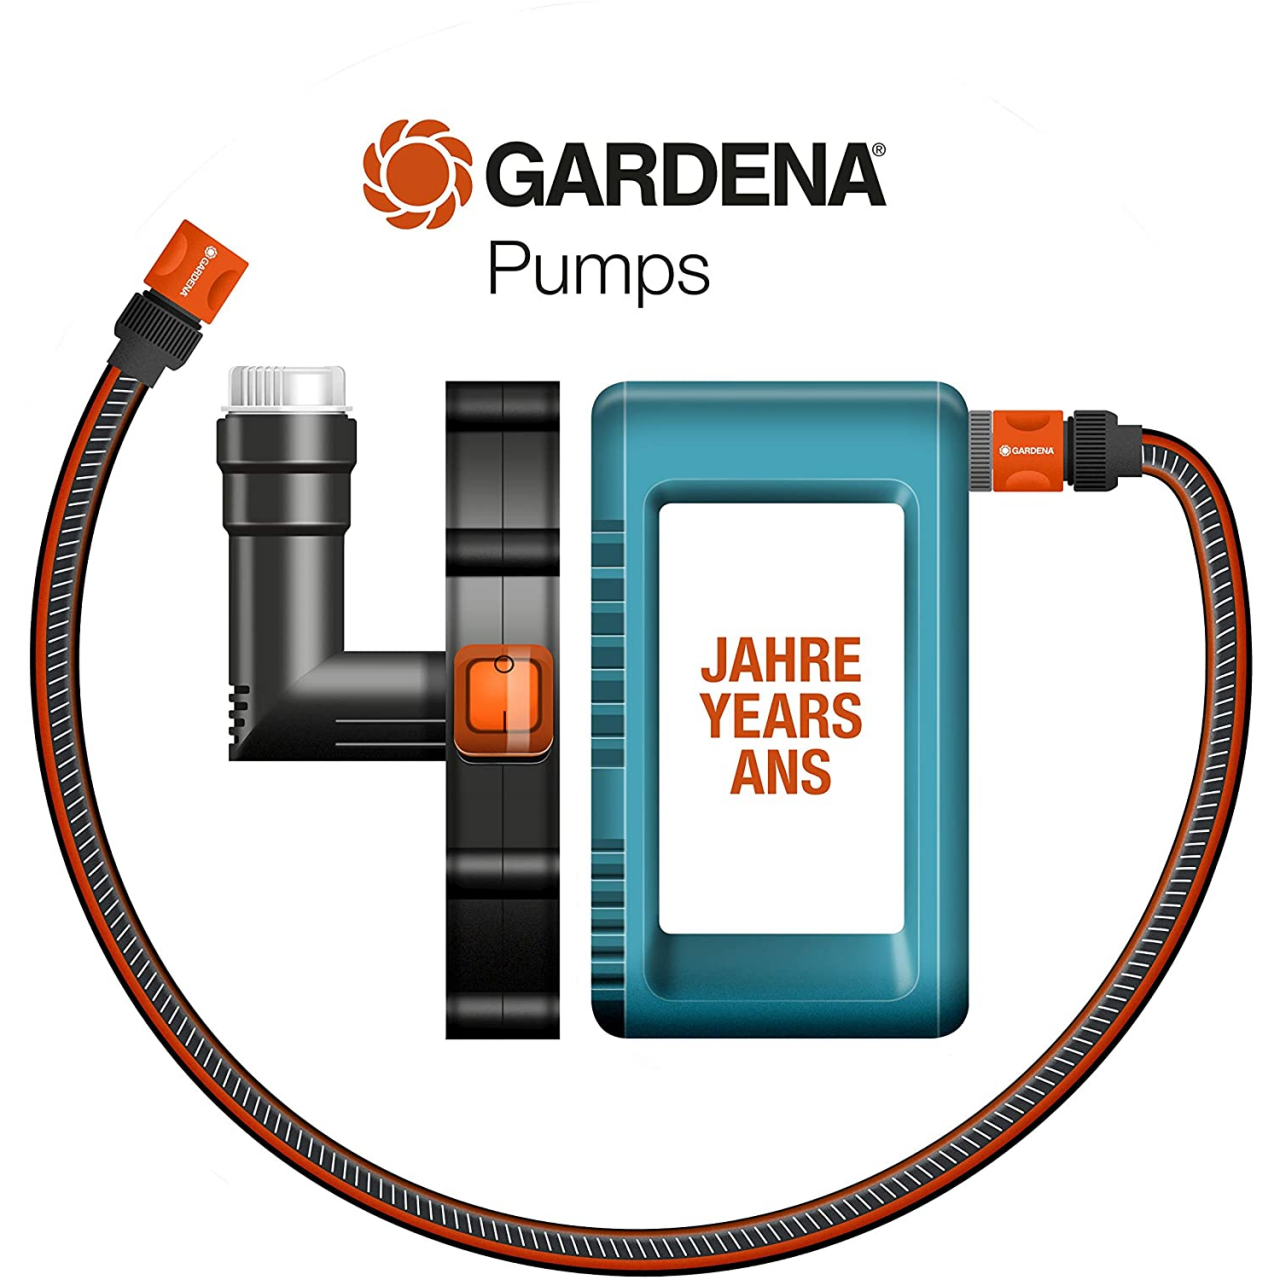 Gardena 1756-20 Hauswasserwerk 5000/5 Gartenbewässerung Pumpe Premium 4500 l/h